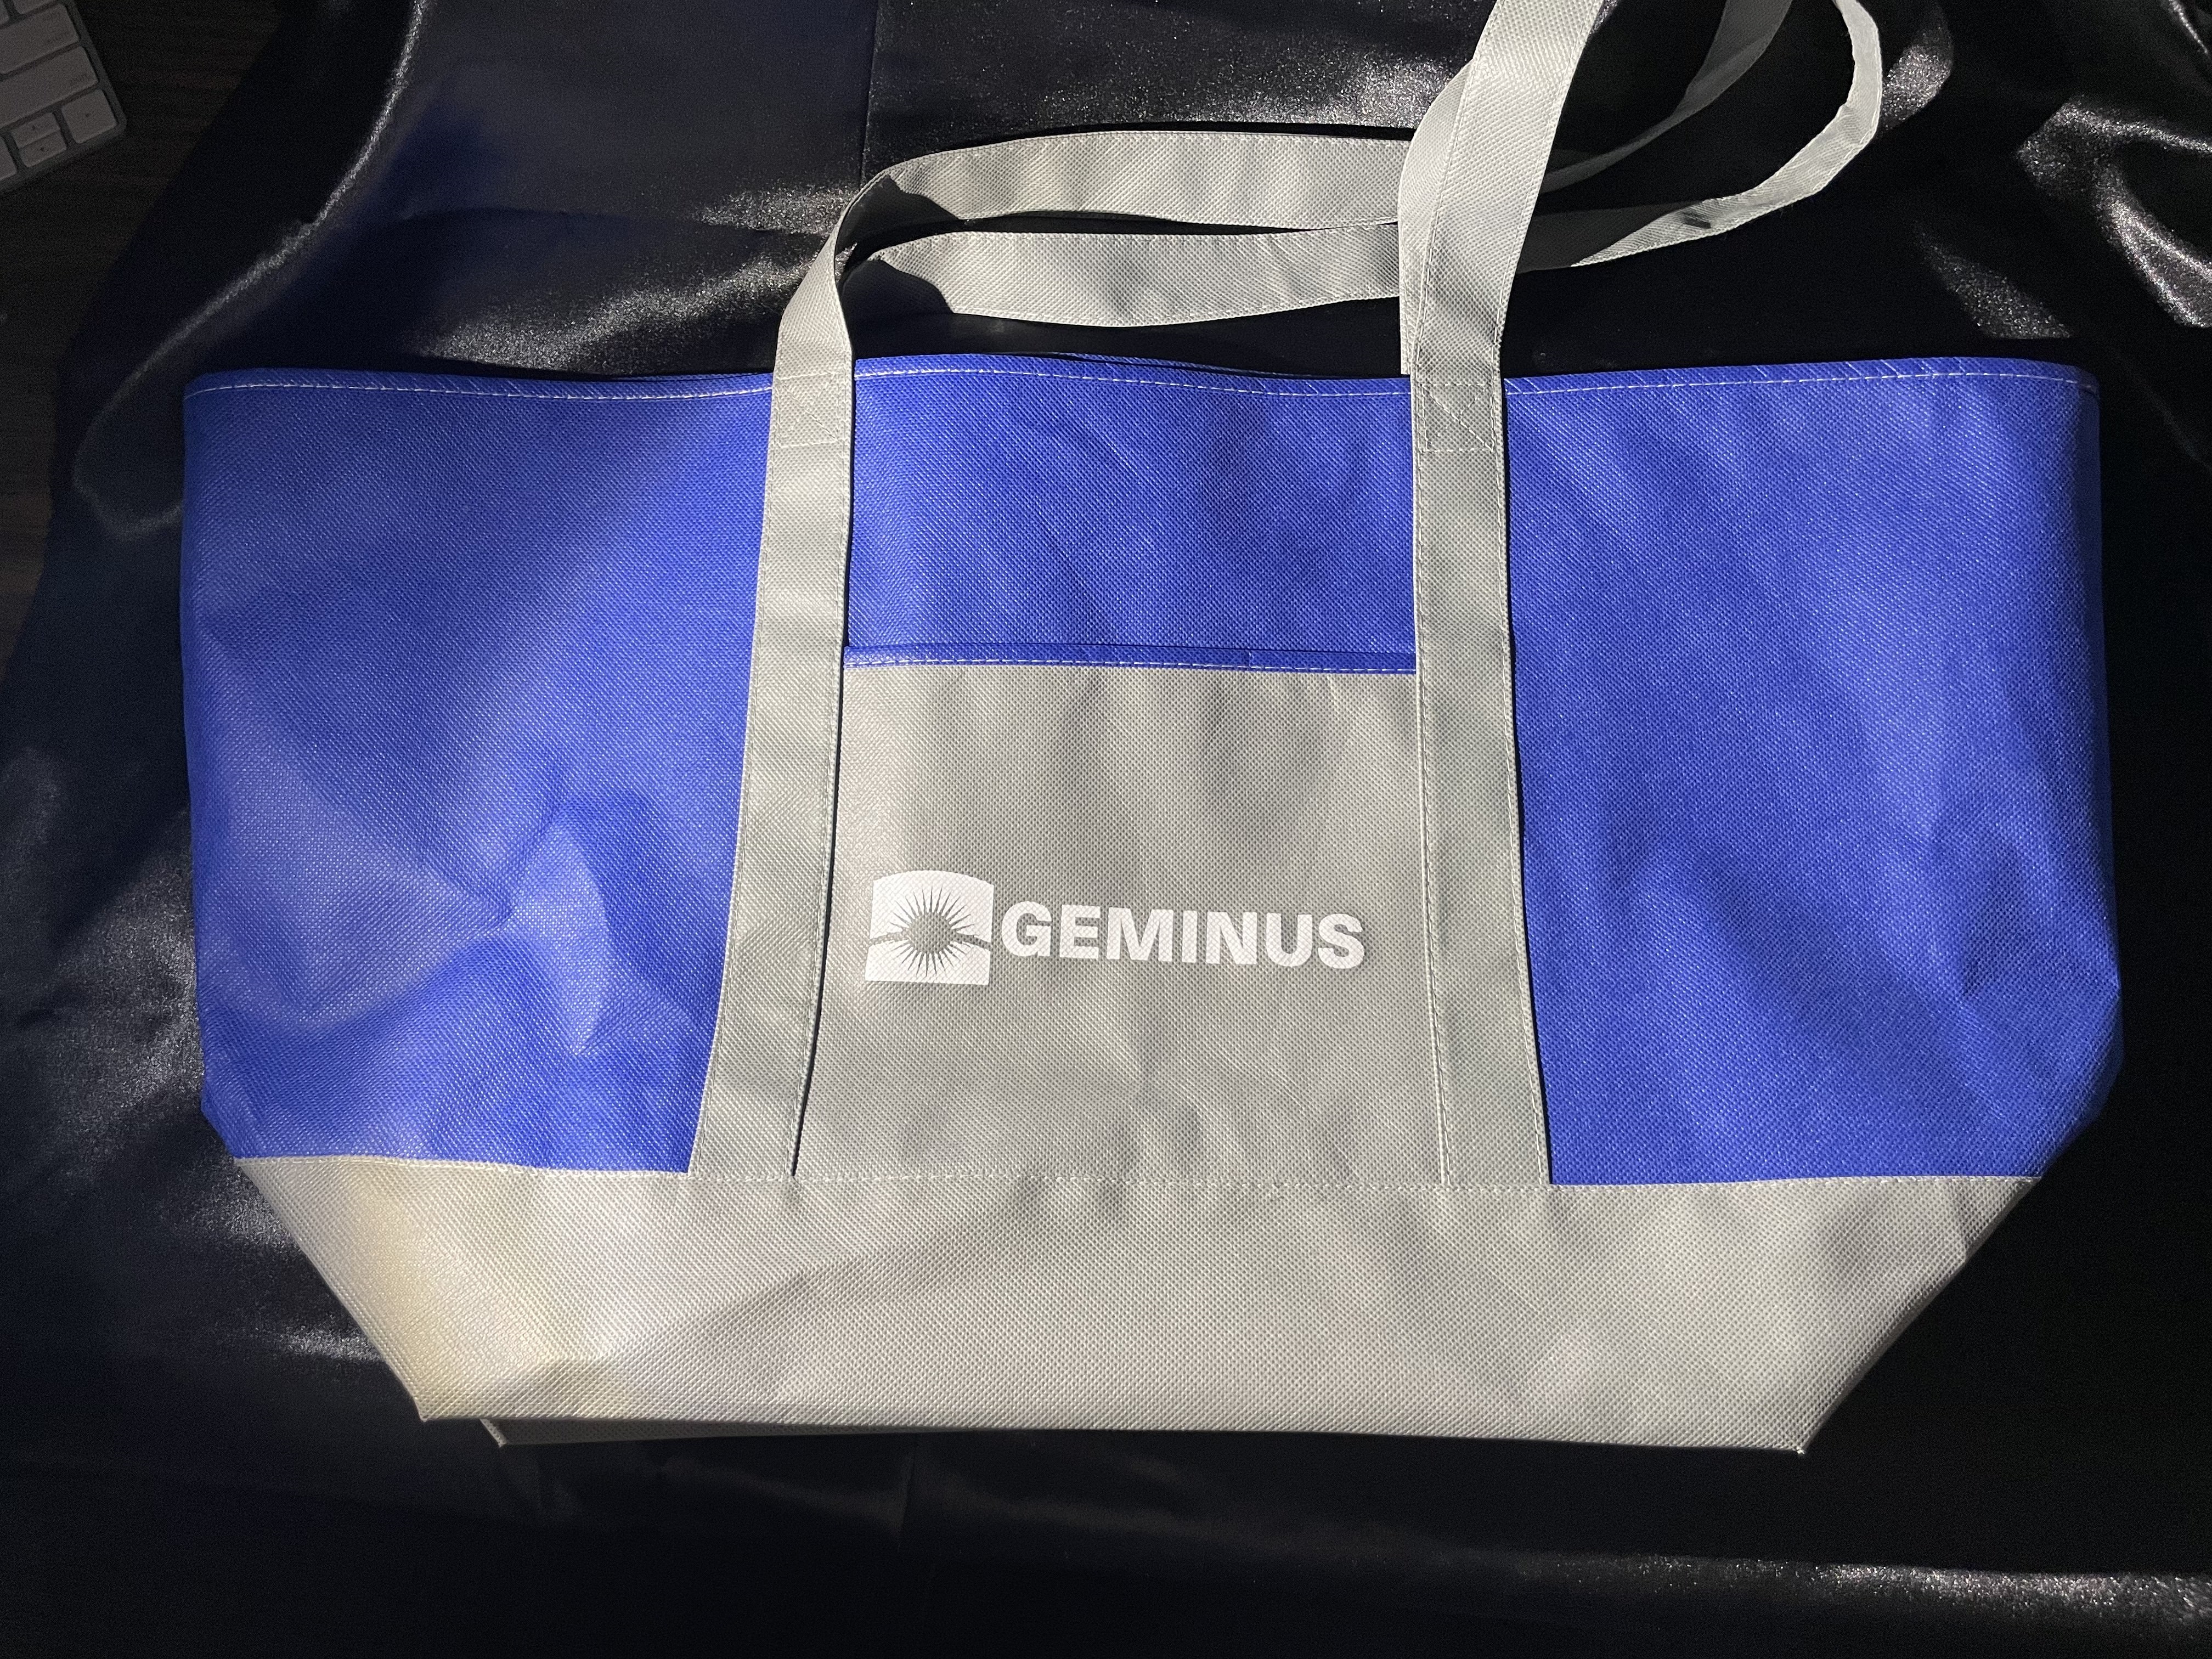  Geminus Reusable Bag